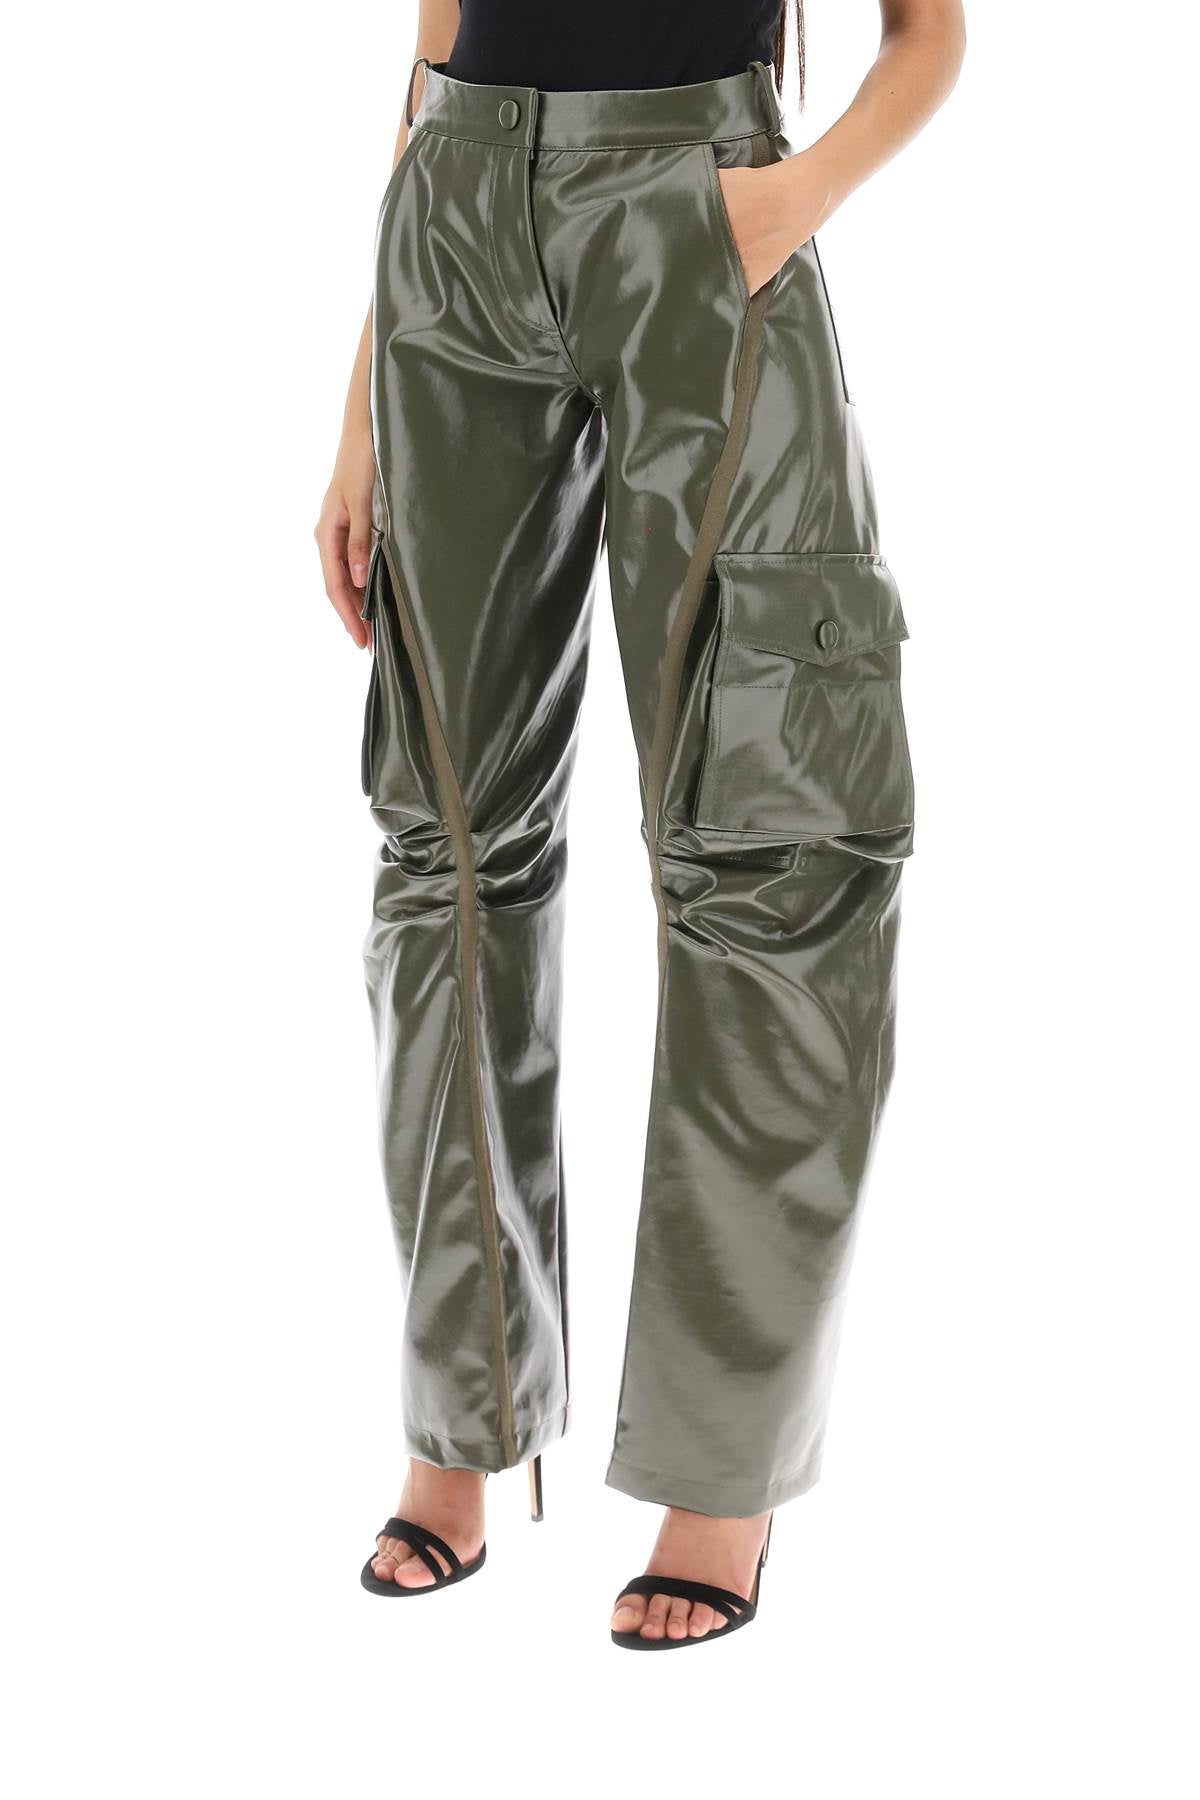 Mvp wardrobe montenapoleone cargo pants-3